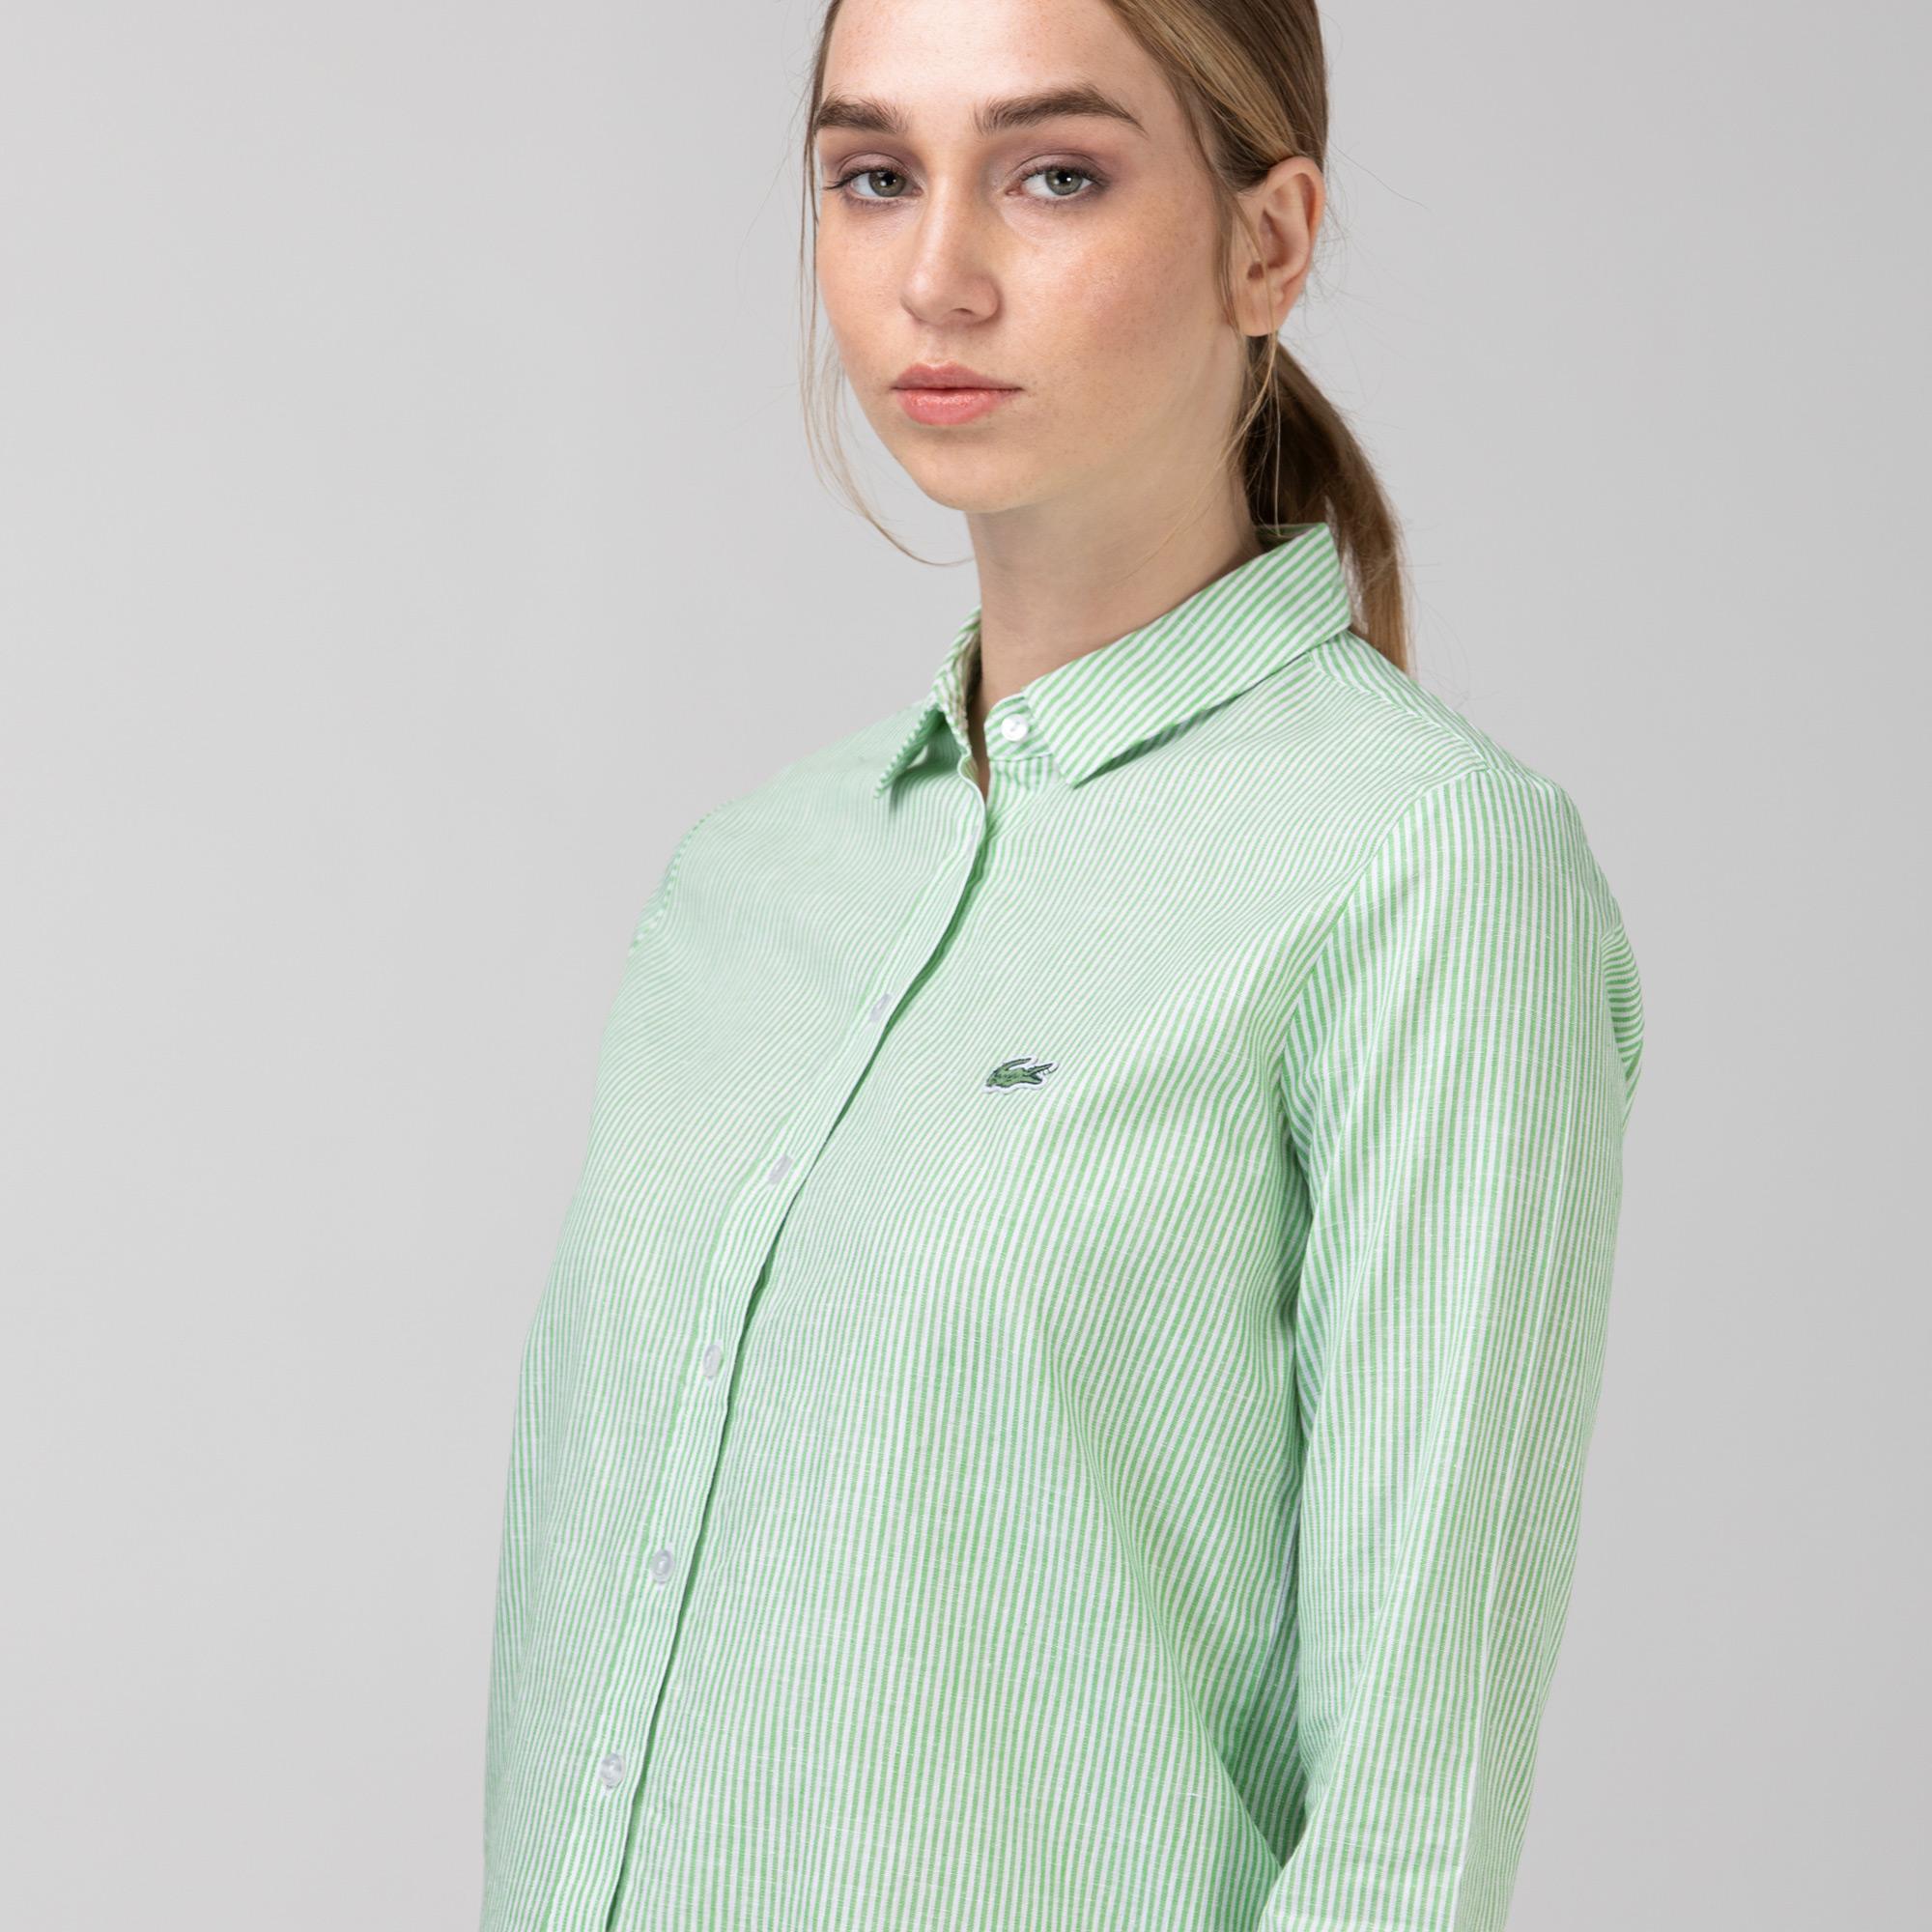 Lacoste Kadın Çizgili Yeşil Gömlek. 5